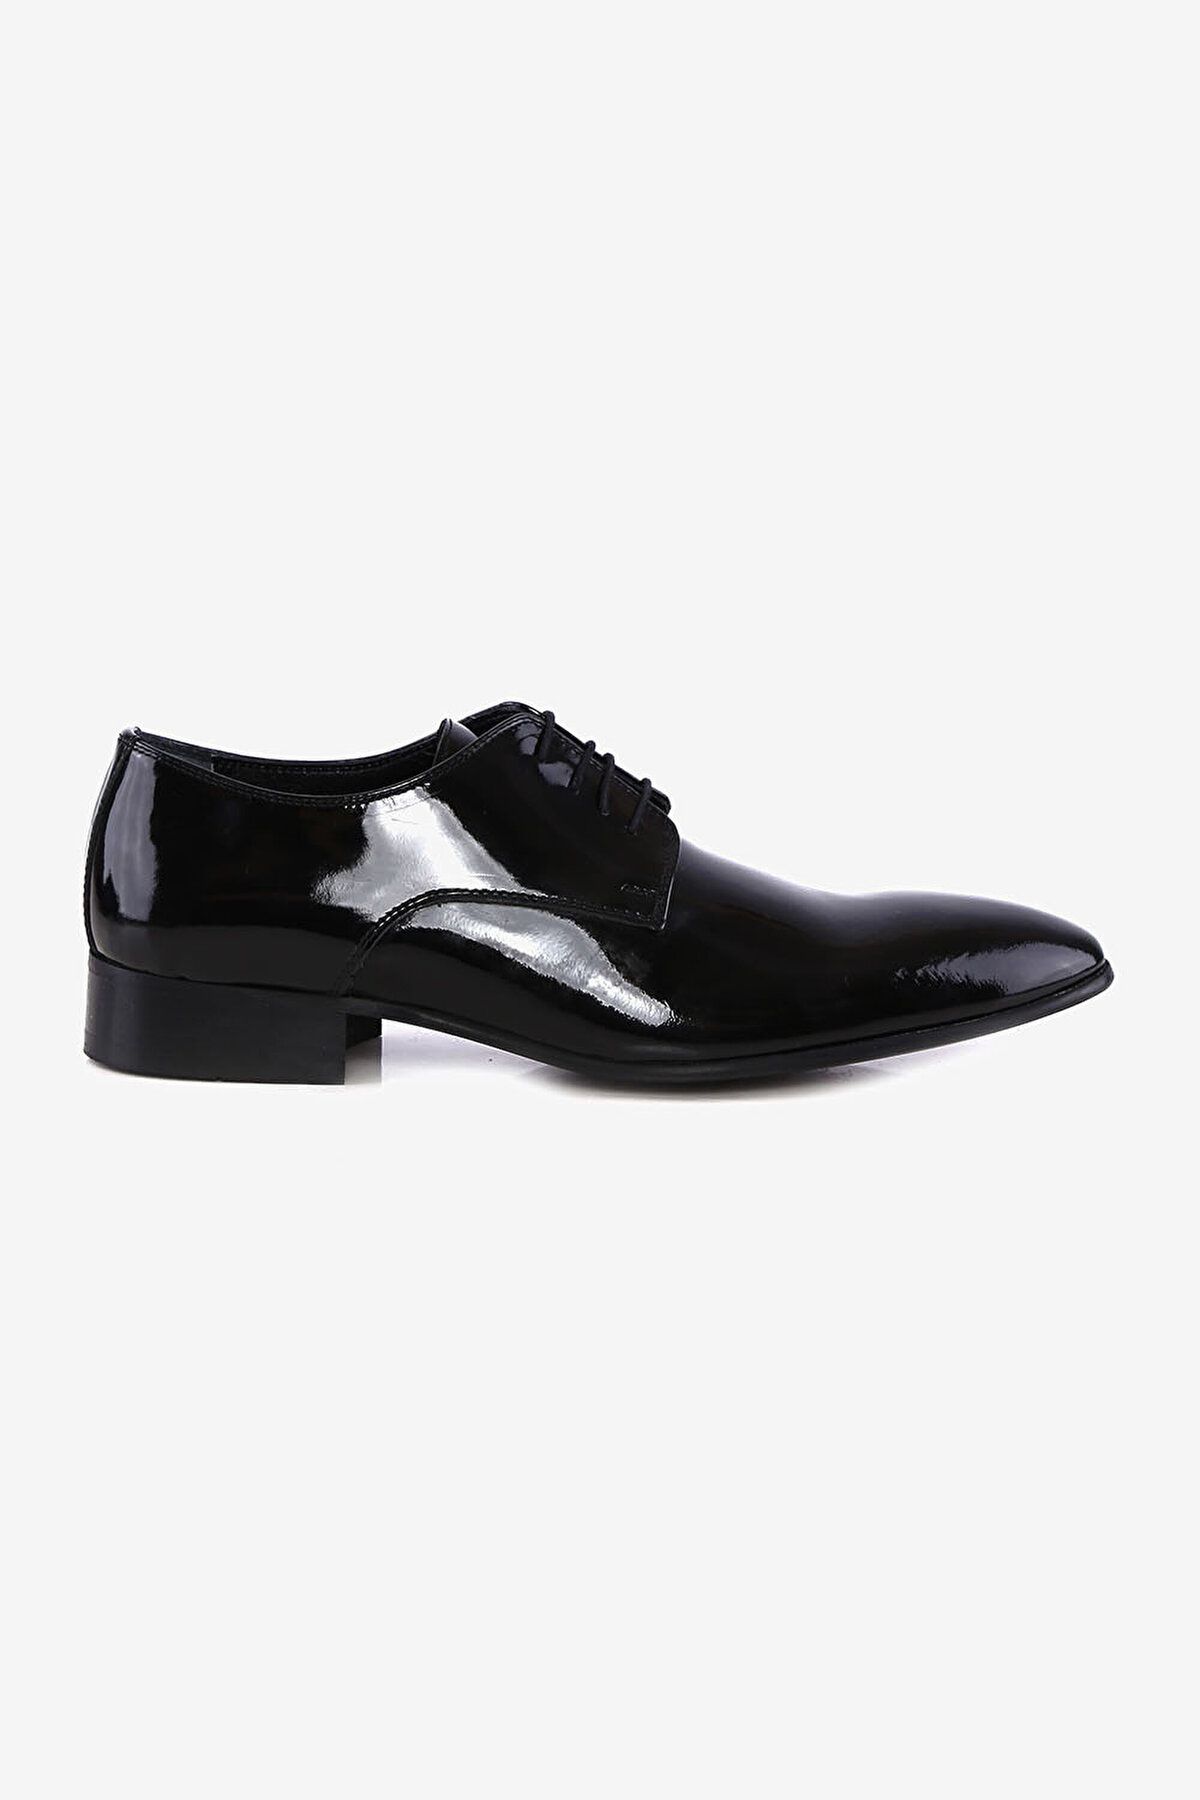 W Collection Siyah Rugan Ayakkabı